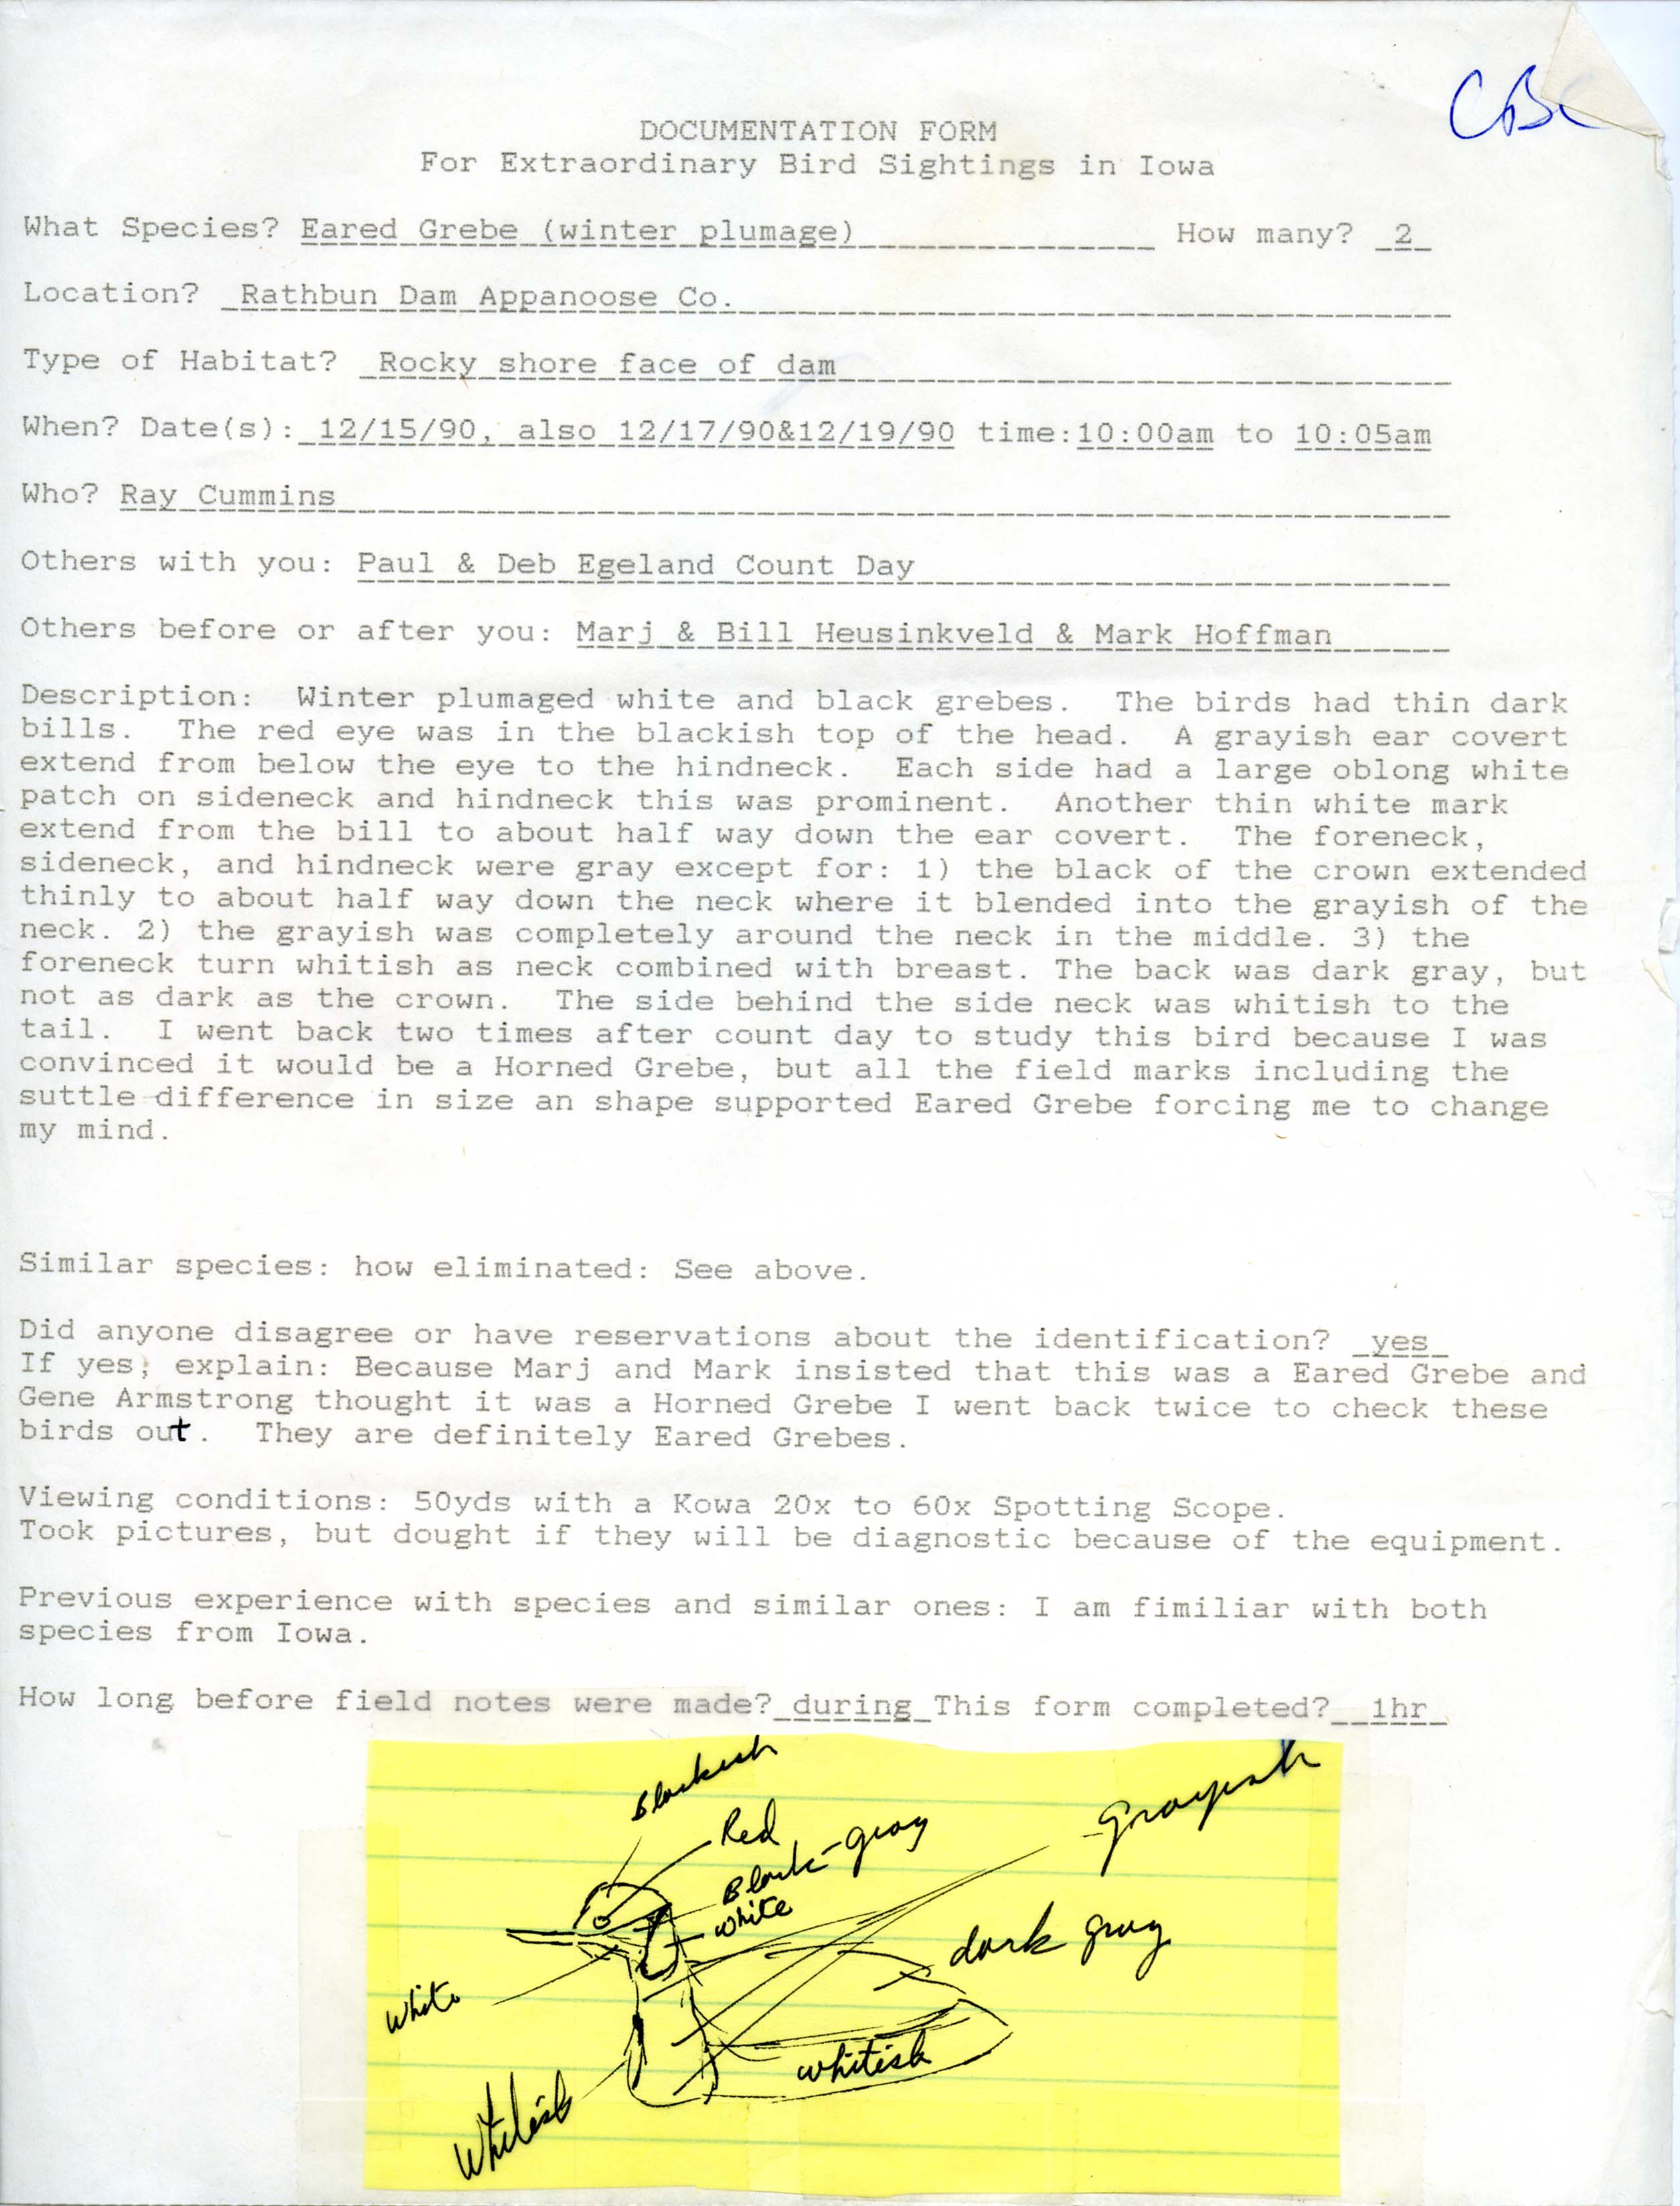 Rare bird documentation form for Eared Grebe at Rathbun Dam, 1990